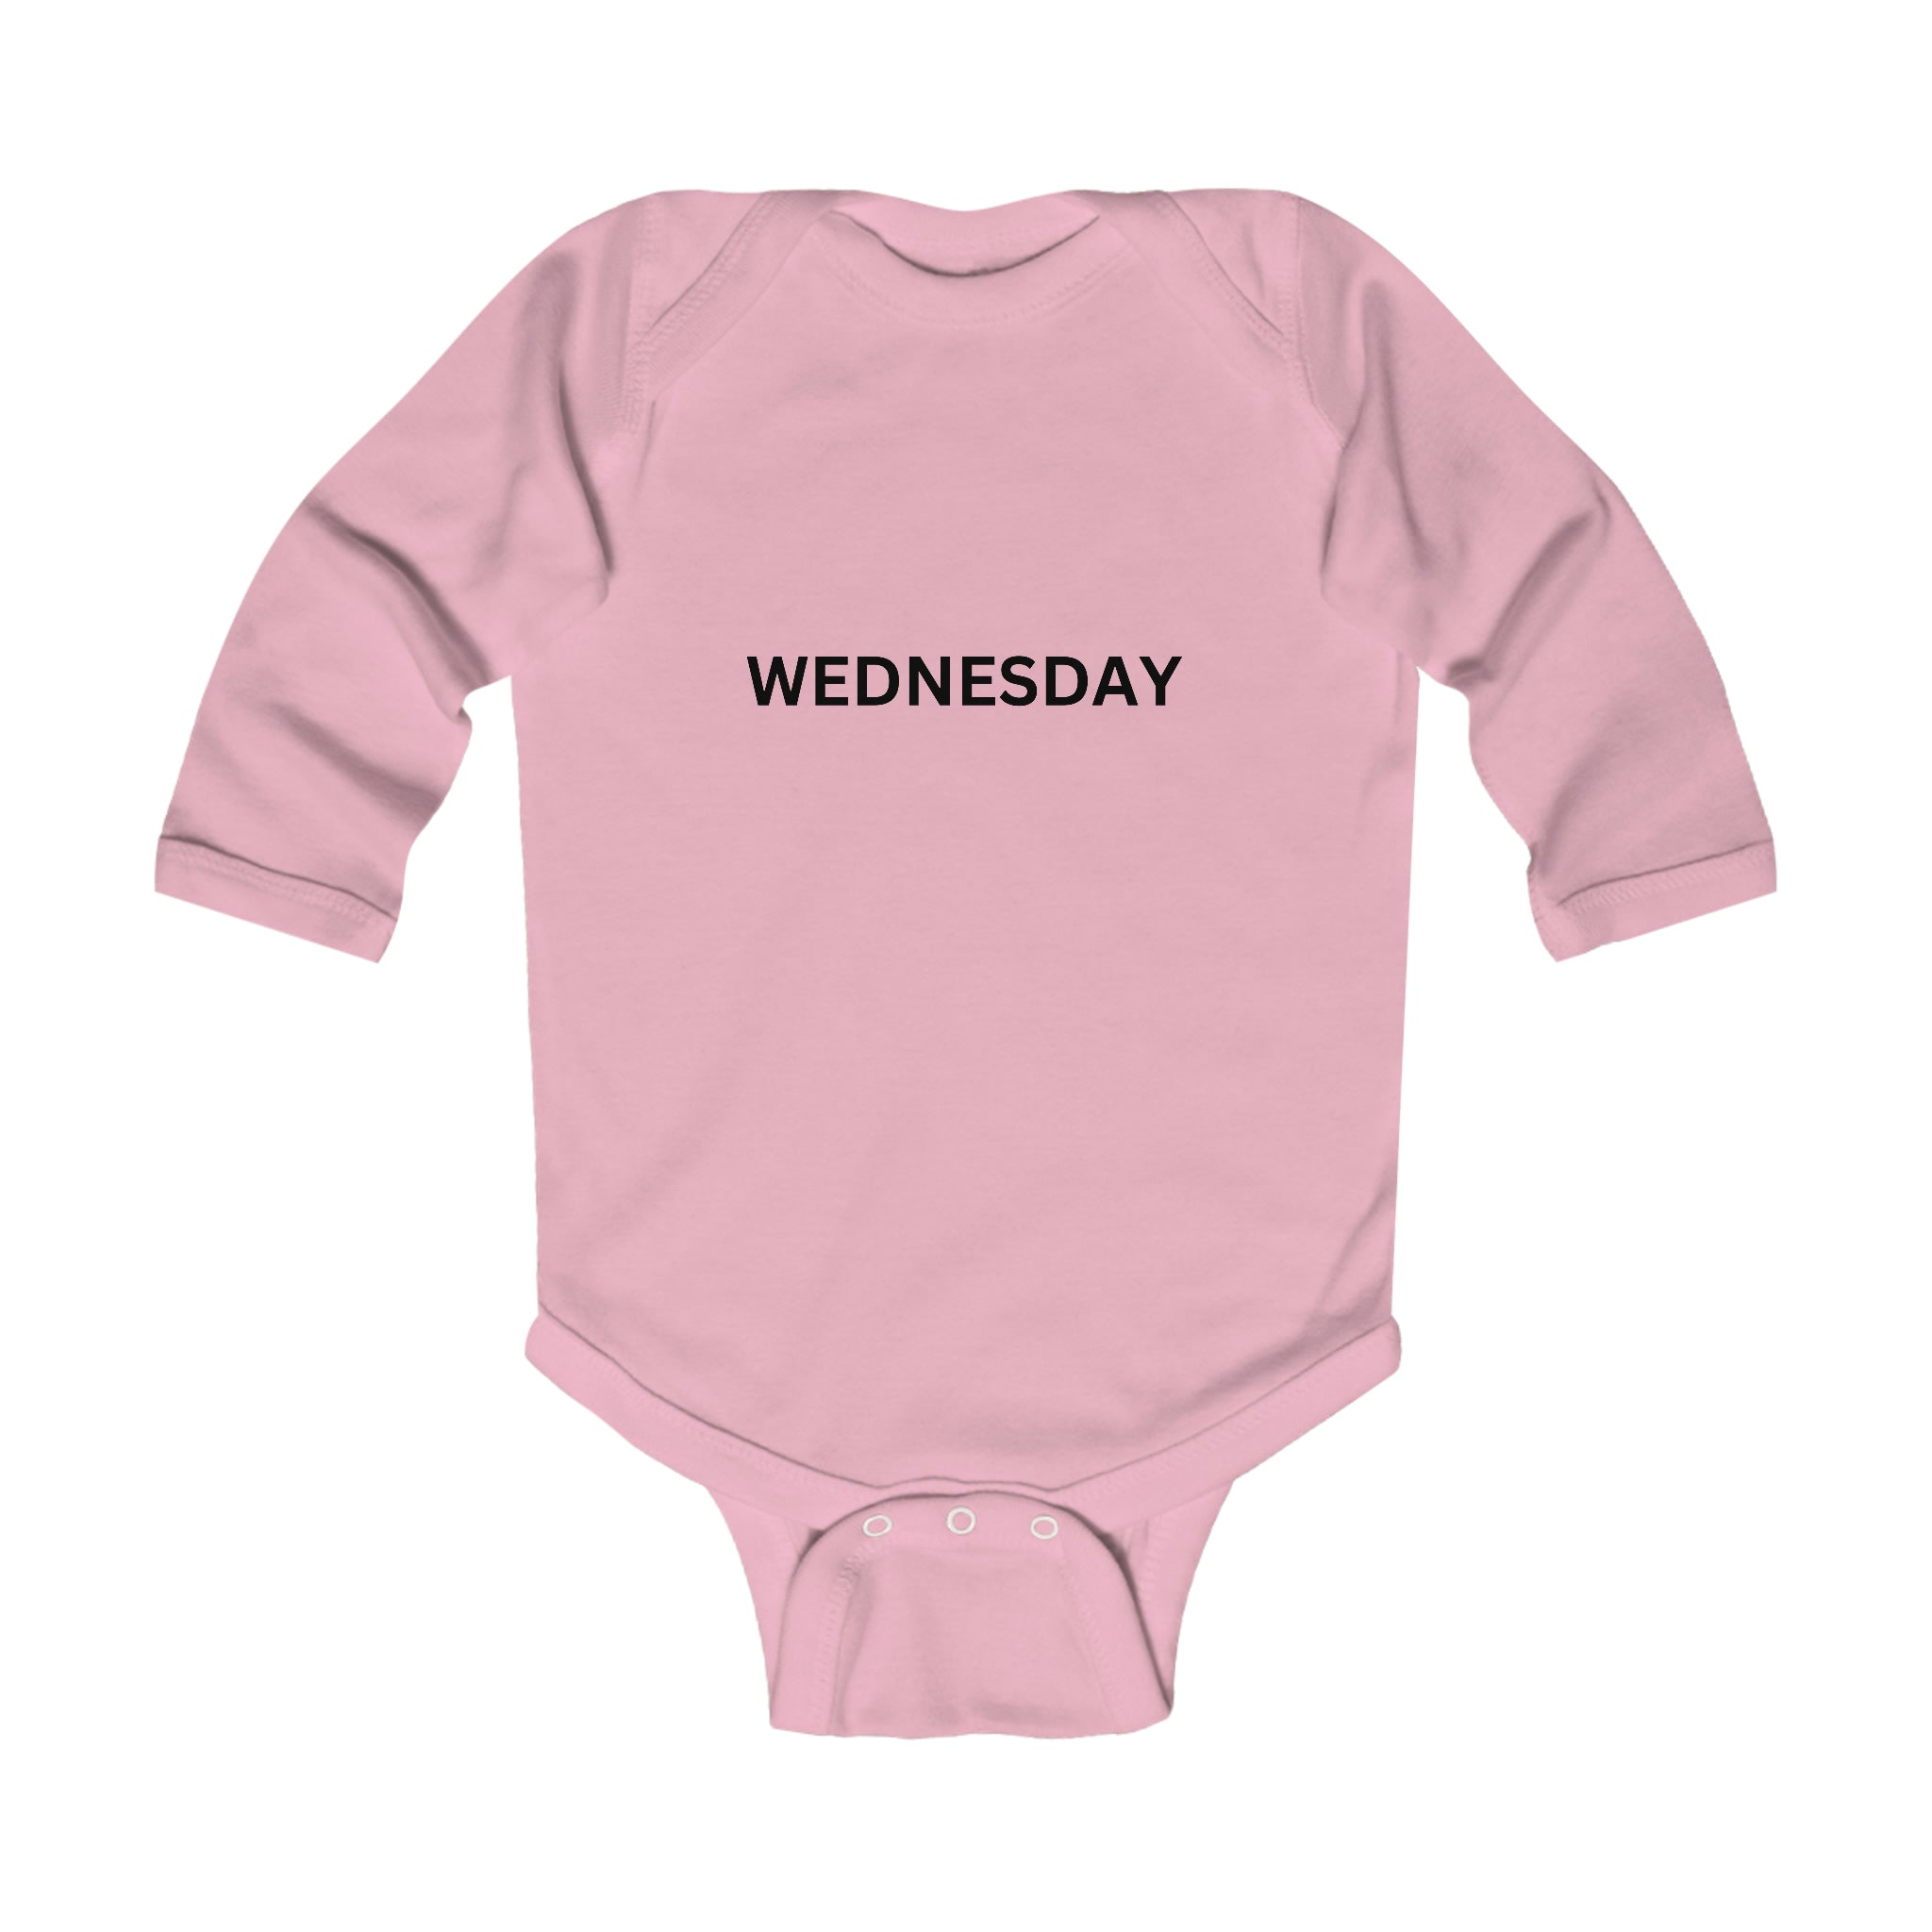 Wednesday Long Sleeve Baby Bodysuit